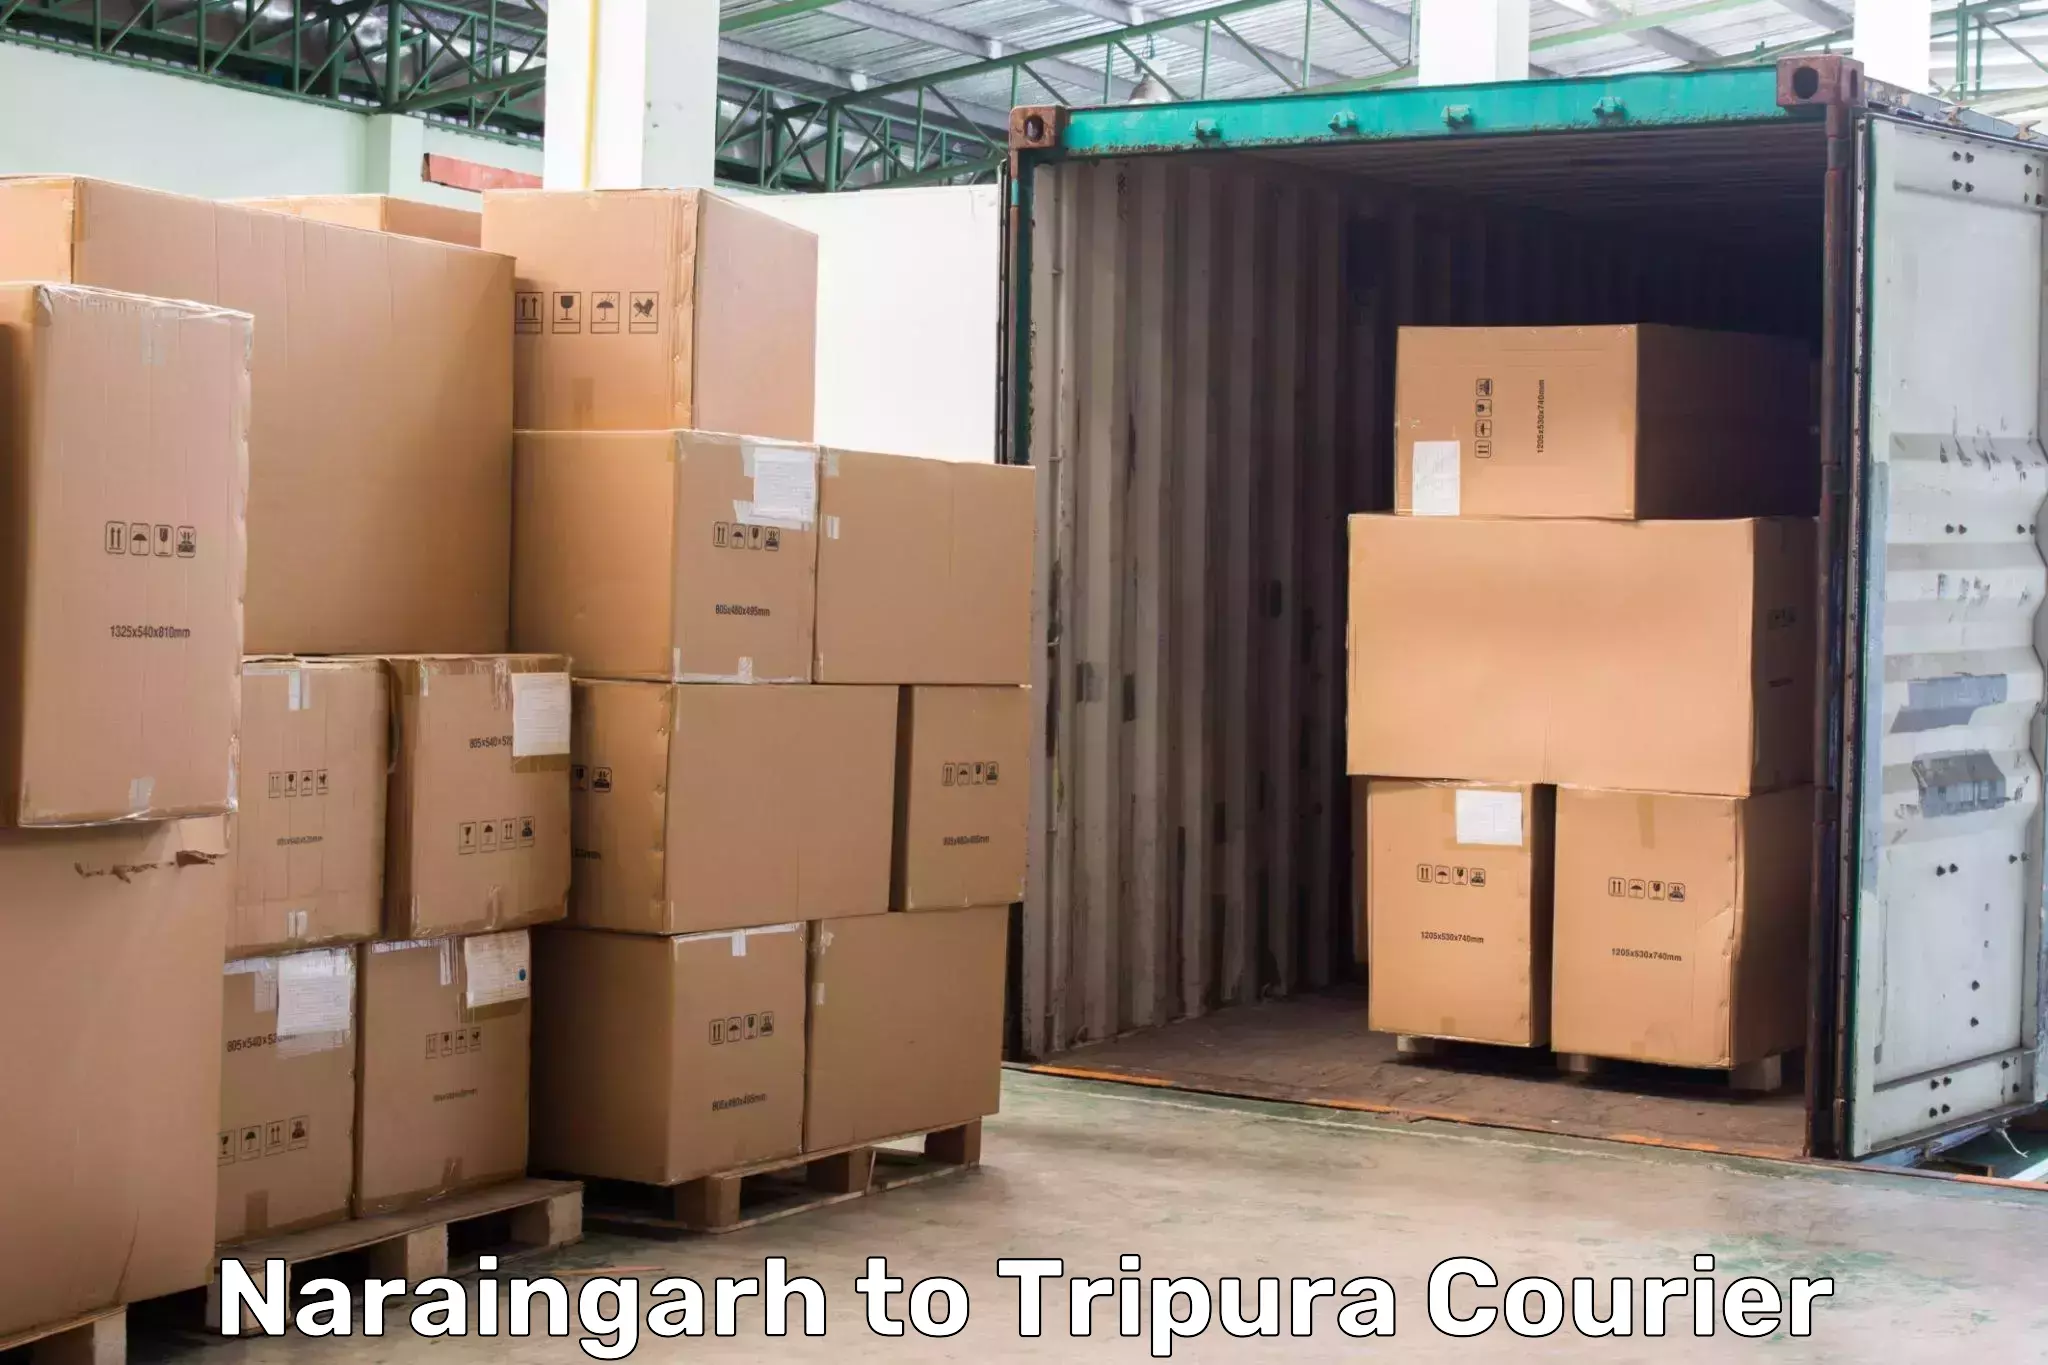 Express logistics providers Naraingarh to Aambasa